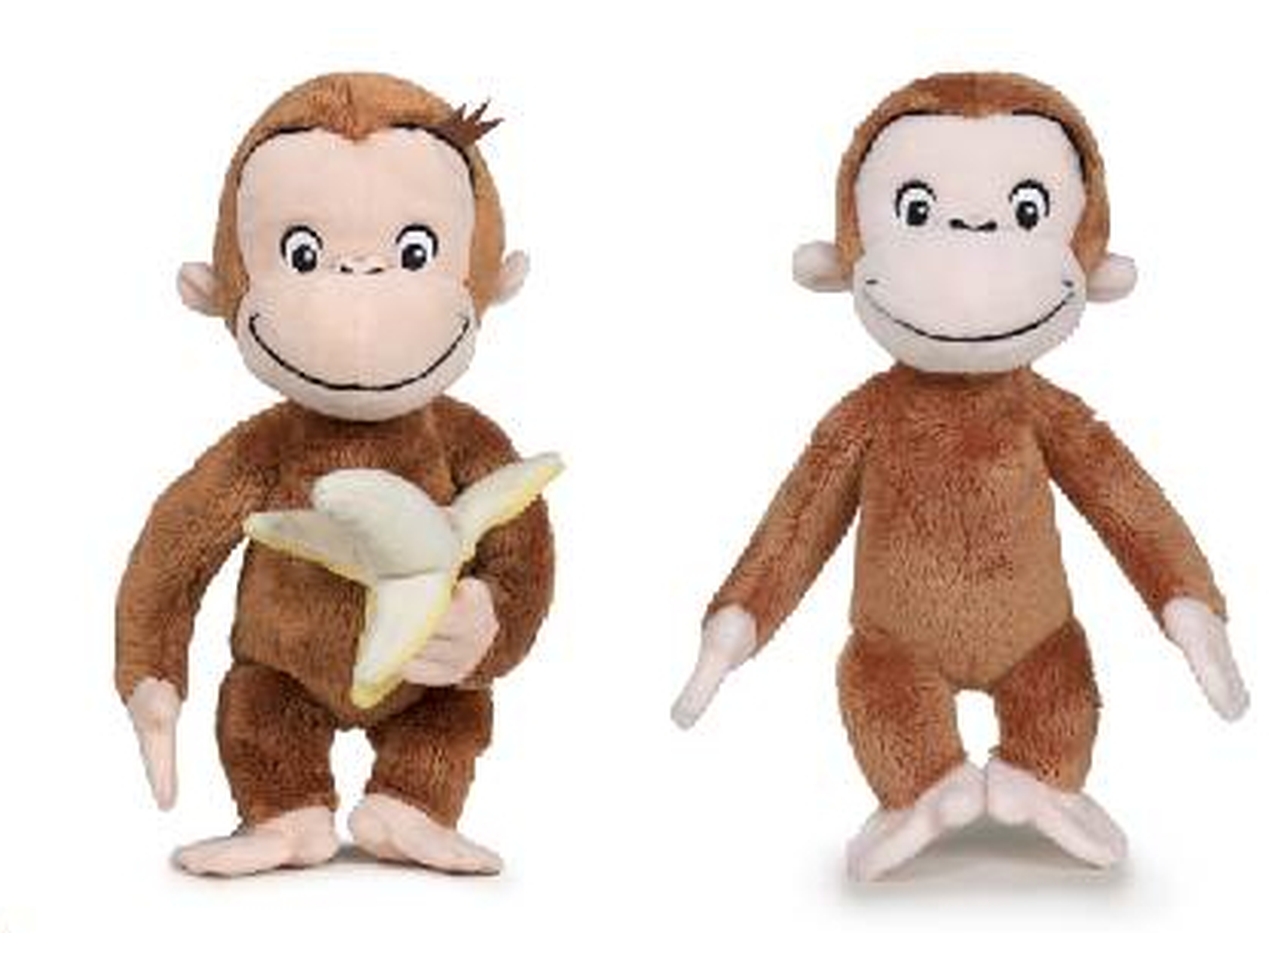 Peluche curioso come george la scimmietta 25cm - disponibile in 2 modelli